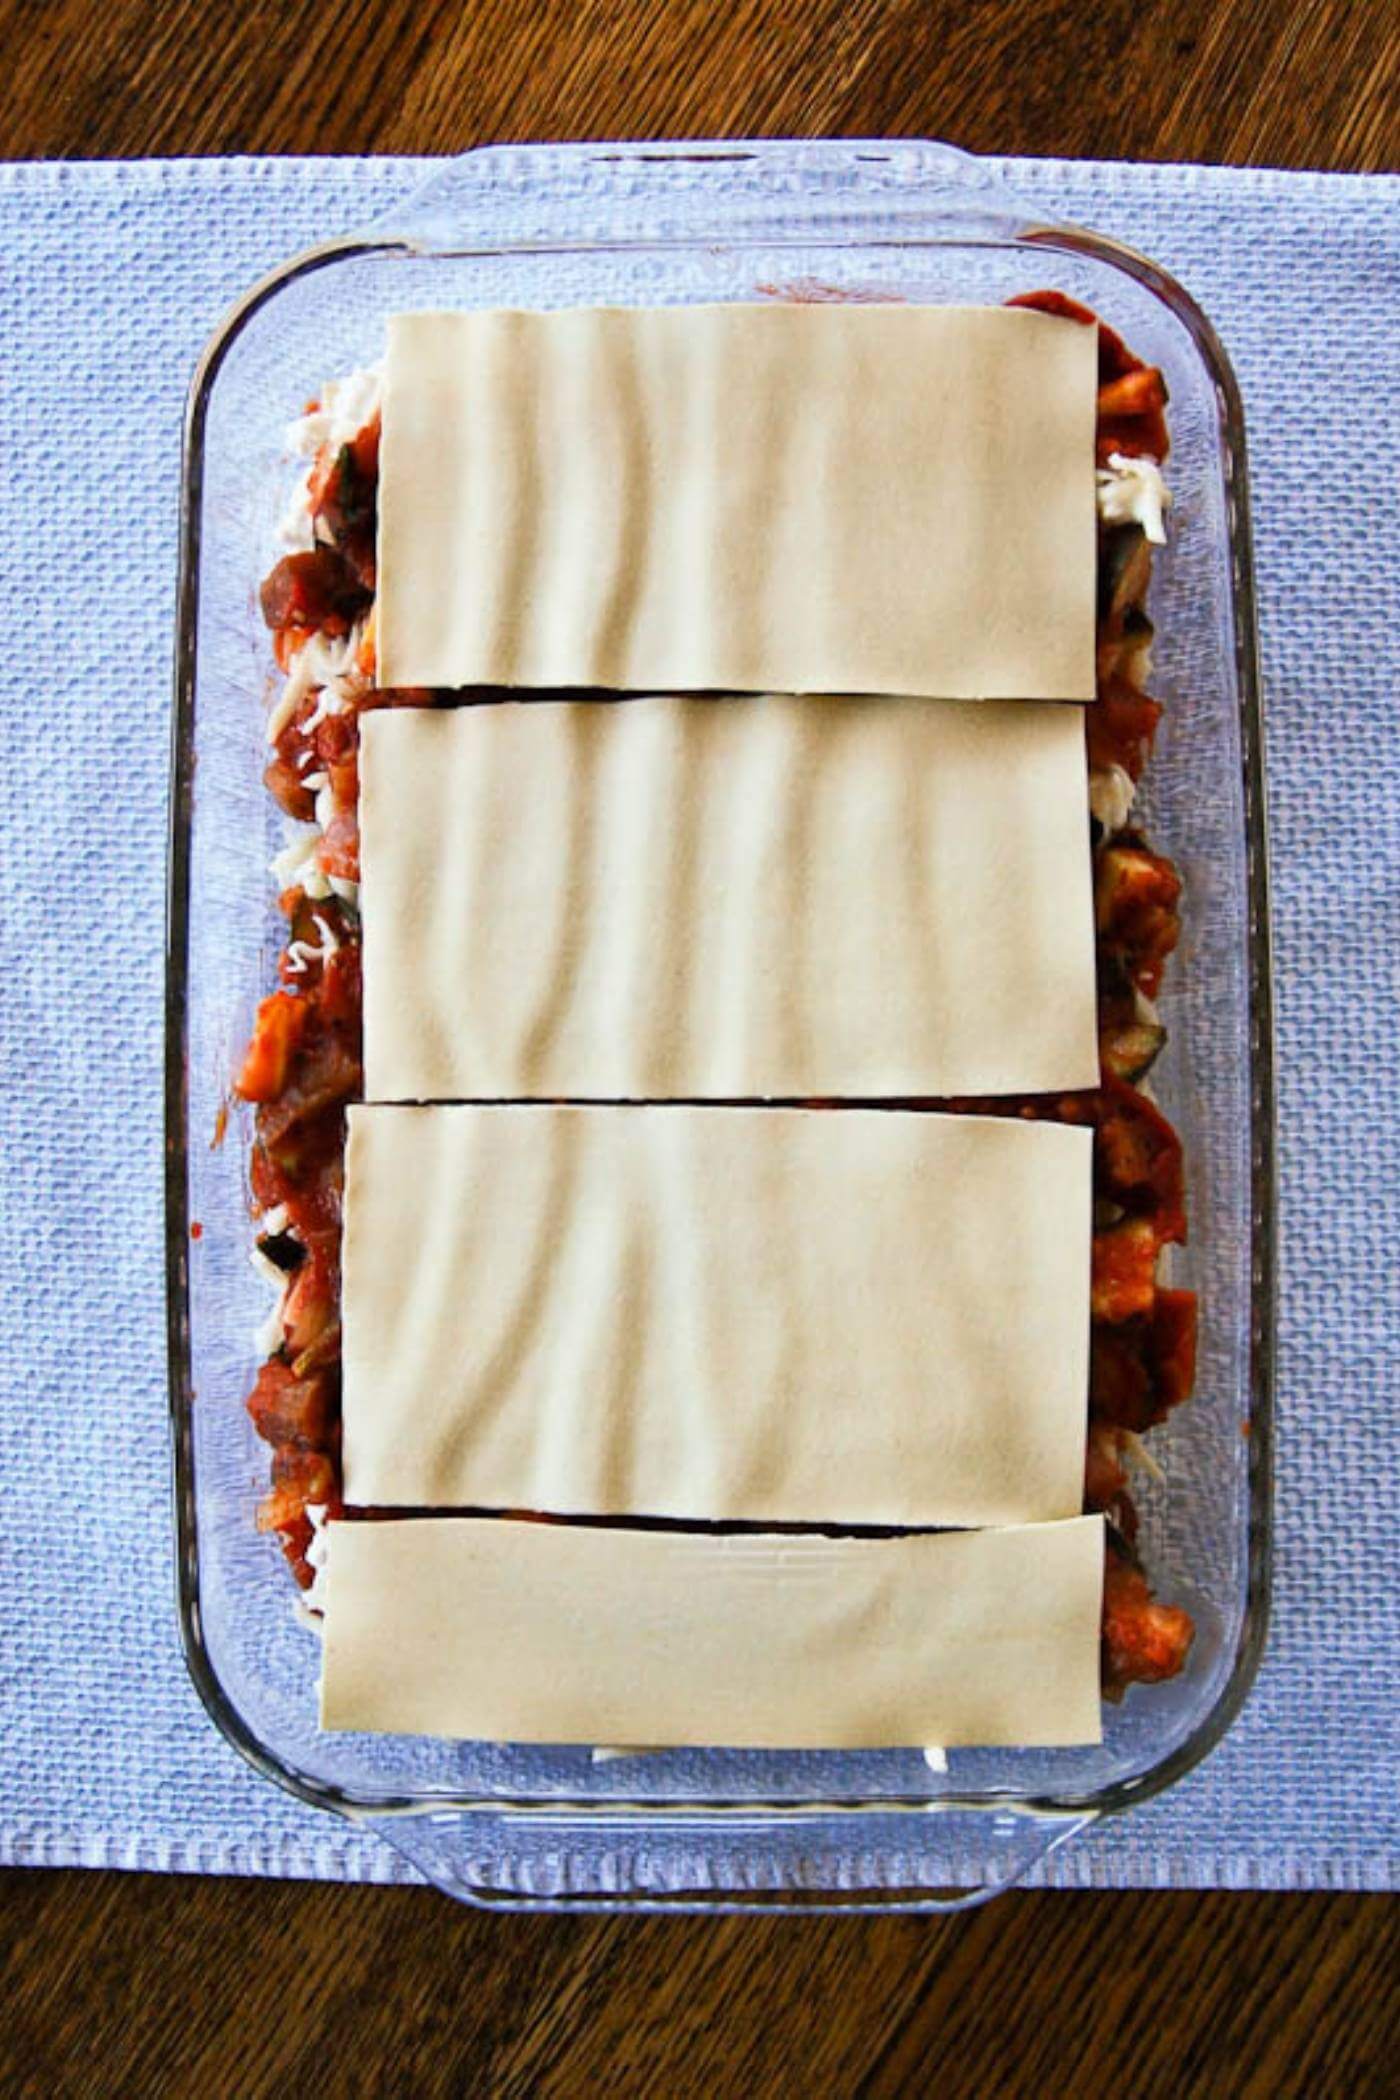 vegetable lasagna assembly - noodles.